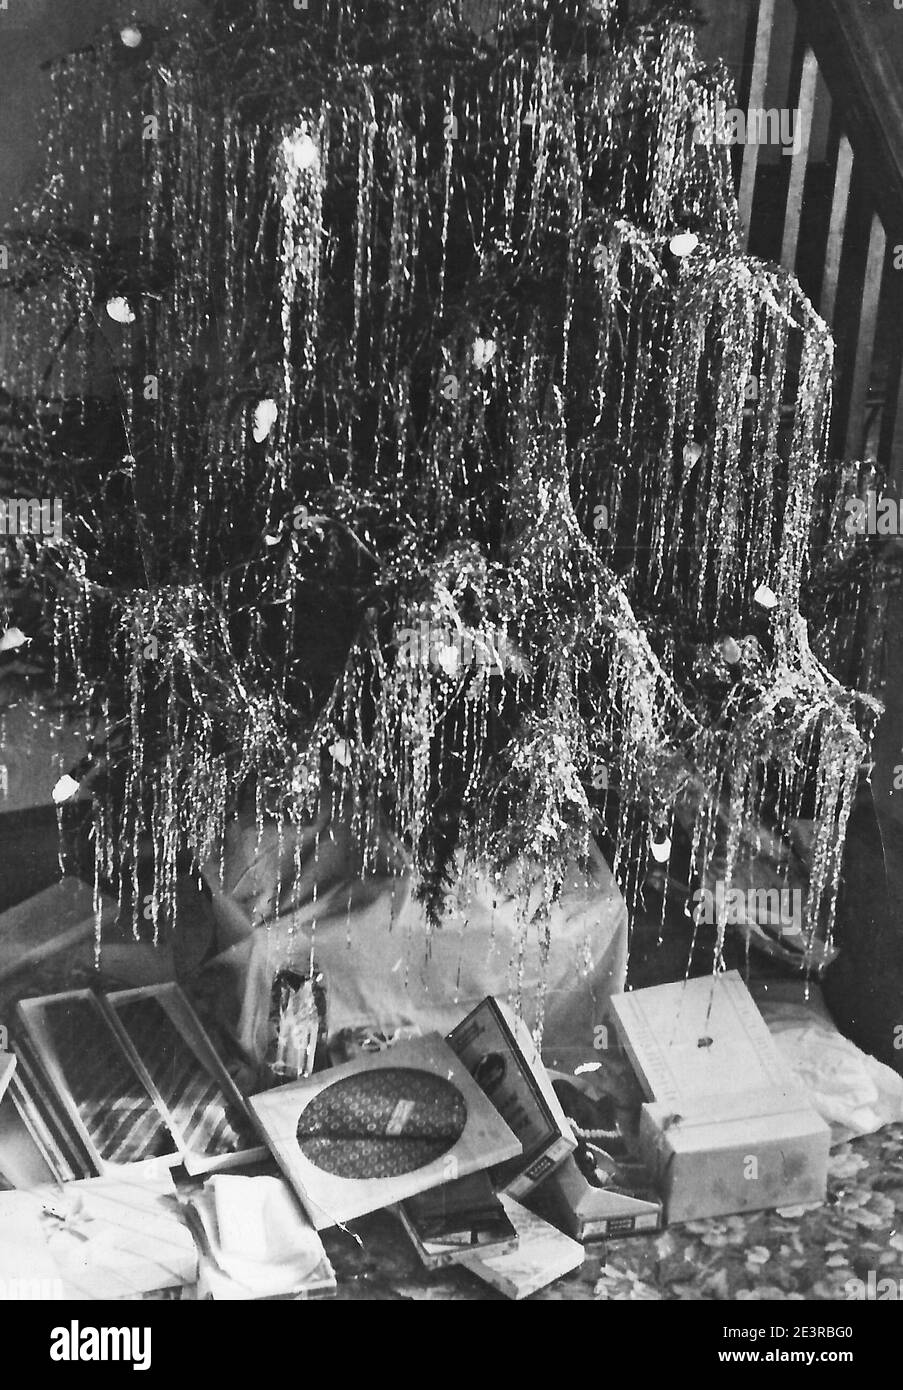 Ein Vintage Schwarz-Weiß Foto von einem Weihnachtsbaum Mit geöffneten Geschenken unter ihm aus den 1950er Jahren Stockfoto